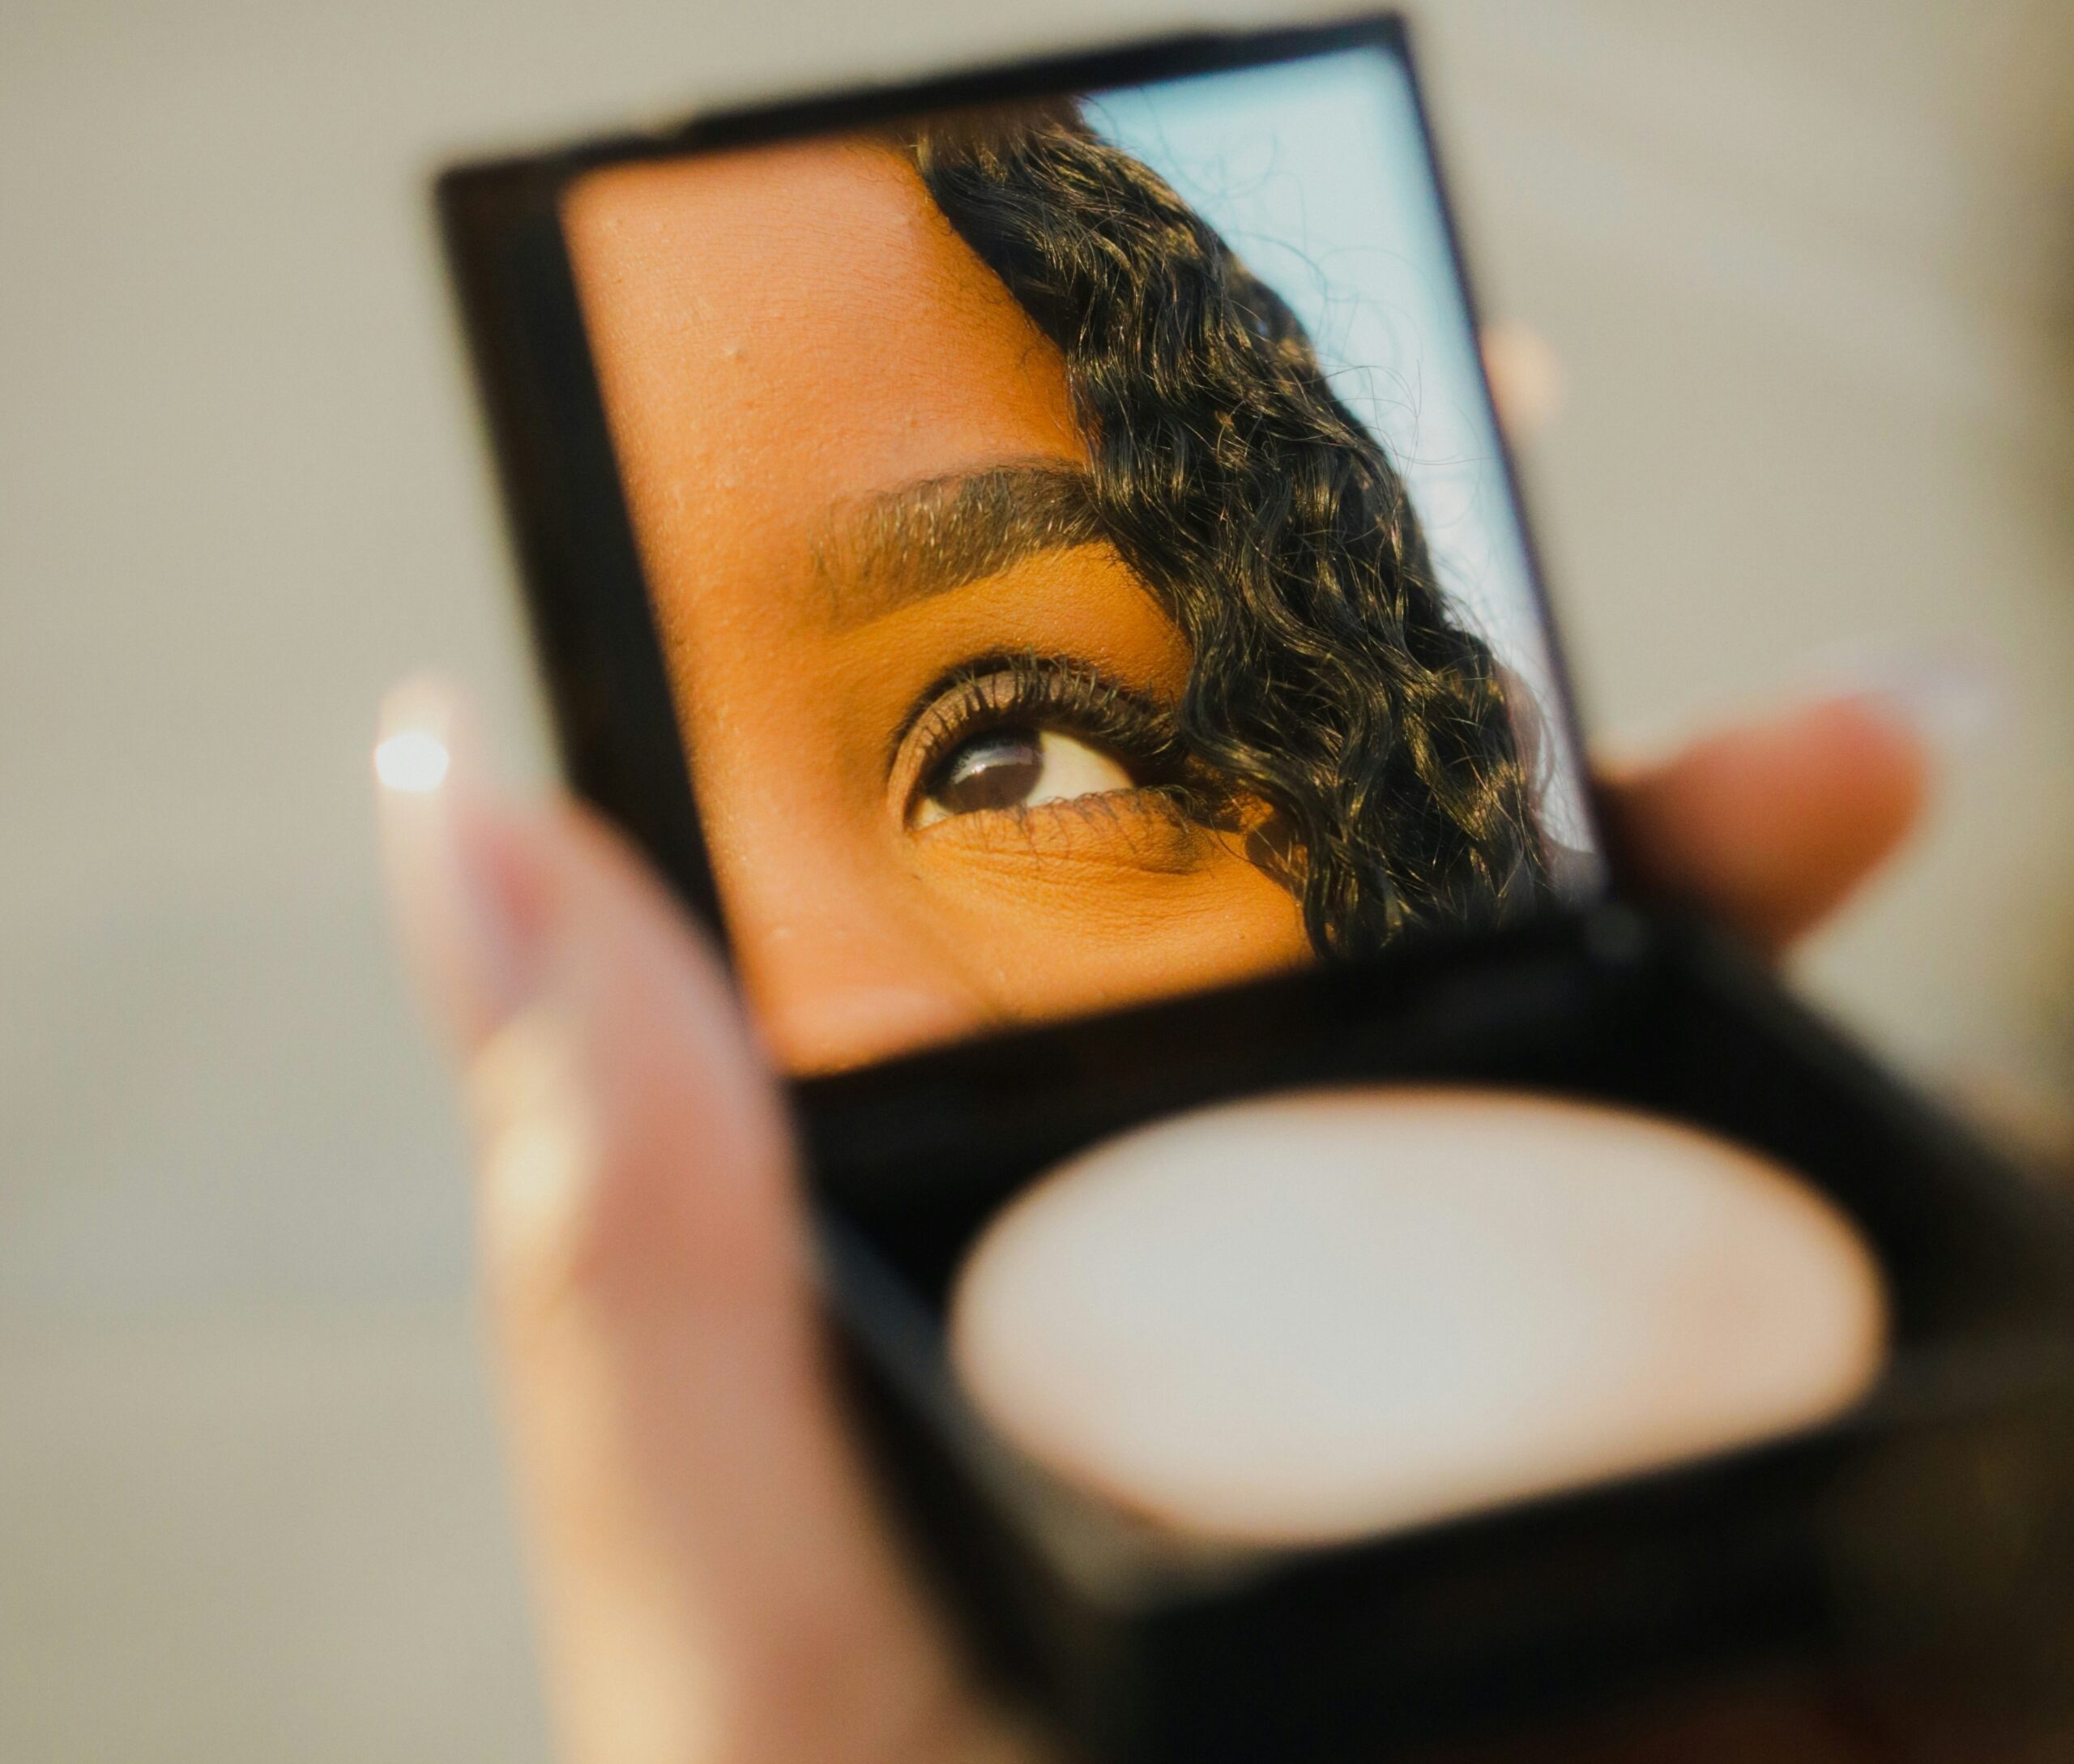 Natural makeup look for beginner makeup kit. Black girl doing makeup